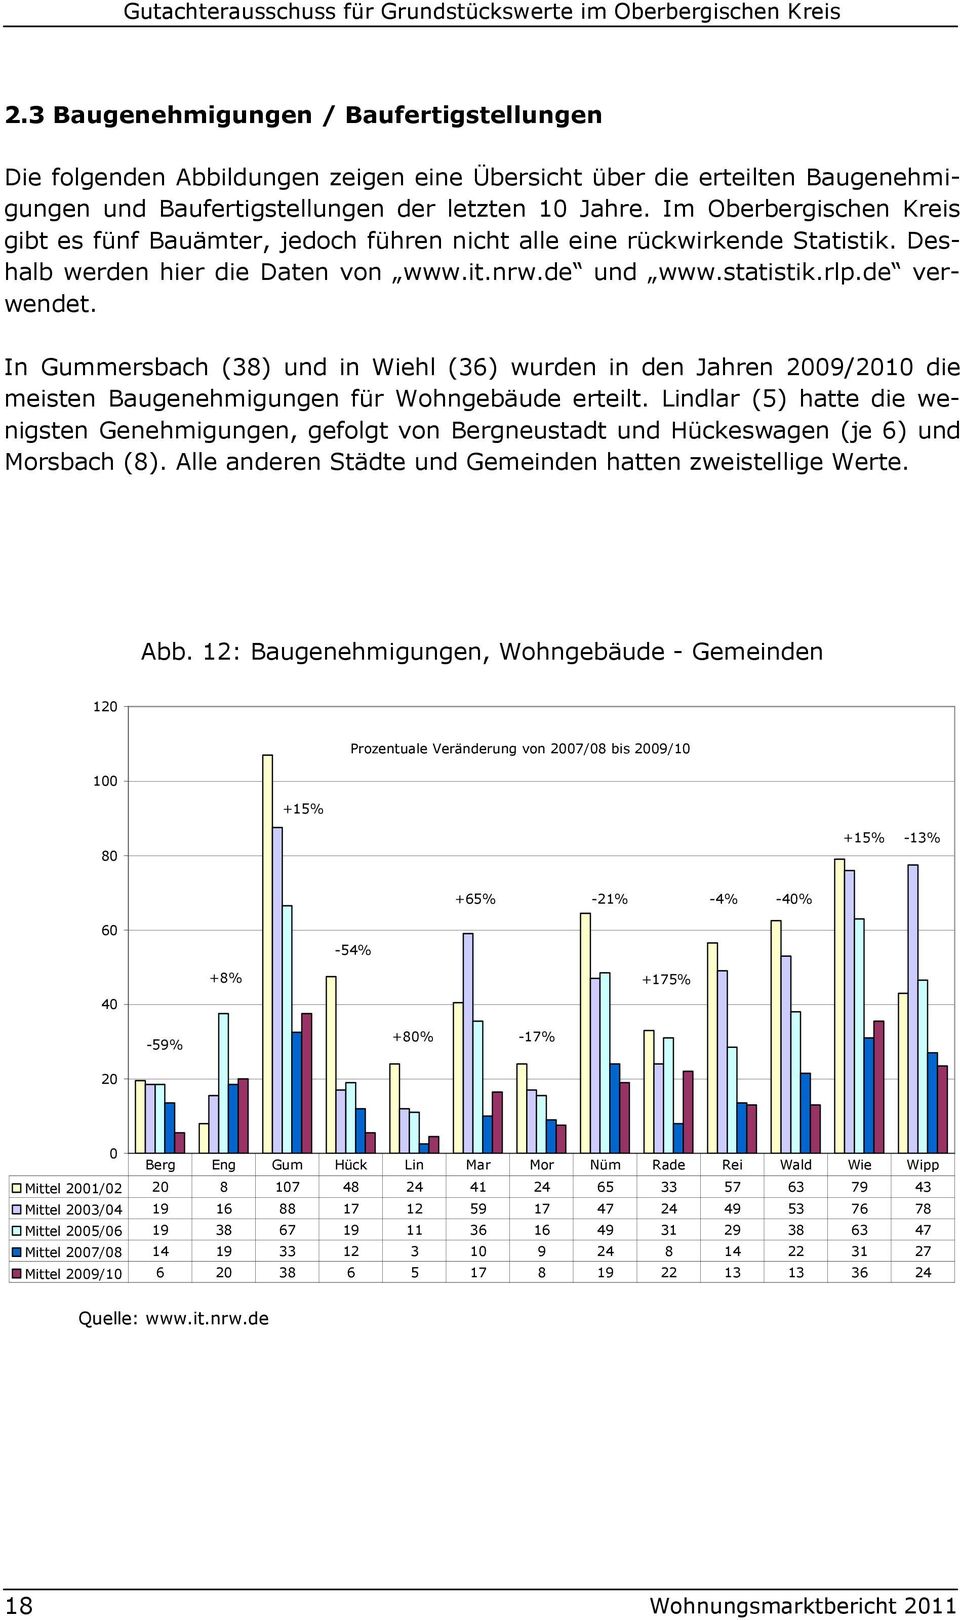 Im Oberbergischen gibt es fünf Bauämter, jedoch führen nicht alle eine rückwirkende Statistik. Deshalb werden hier die Daten von www.it.nrw.de und www.statistik.rlp.de verwendet.